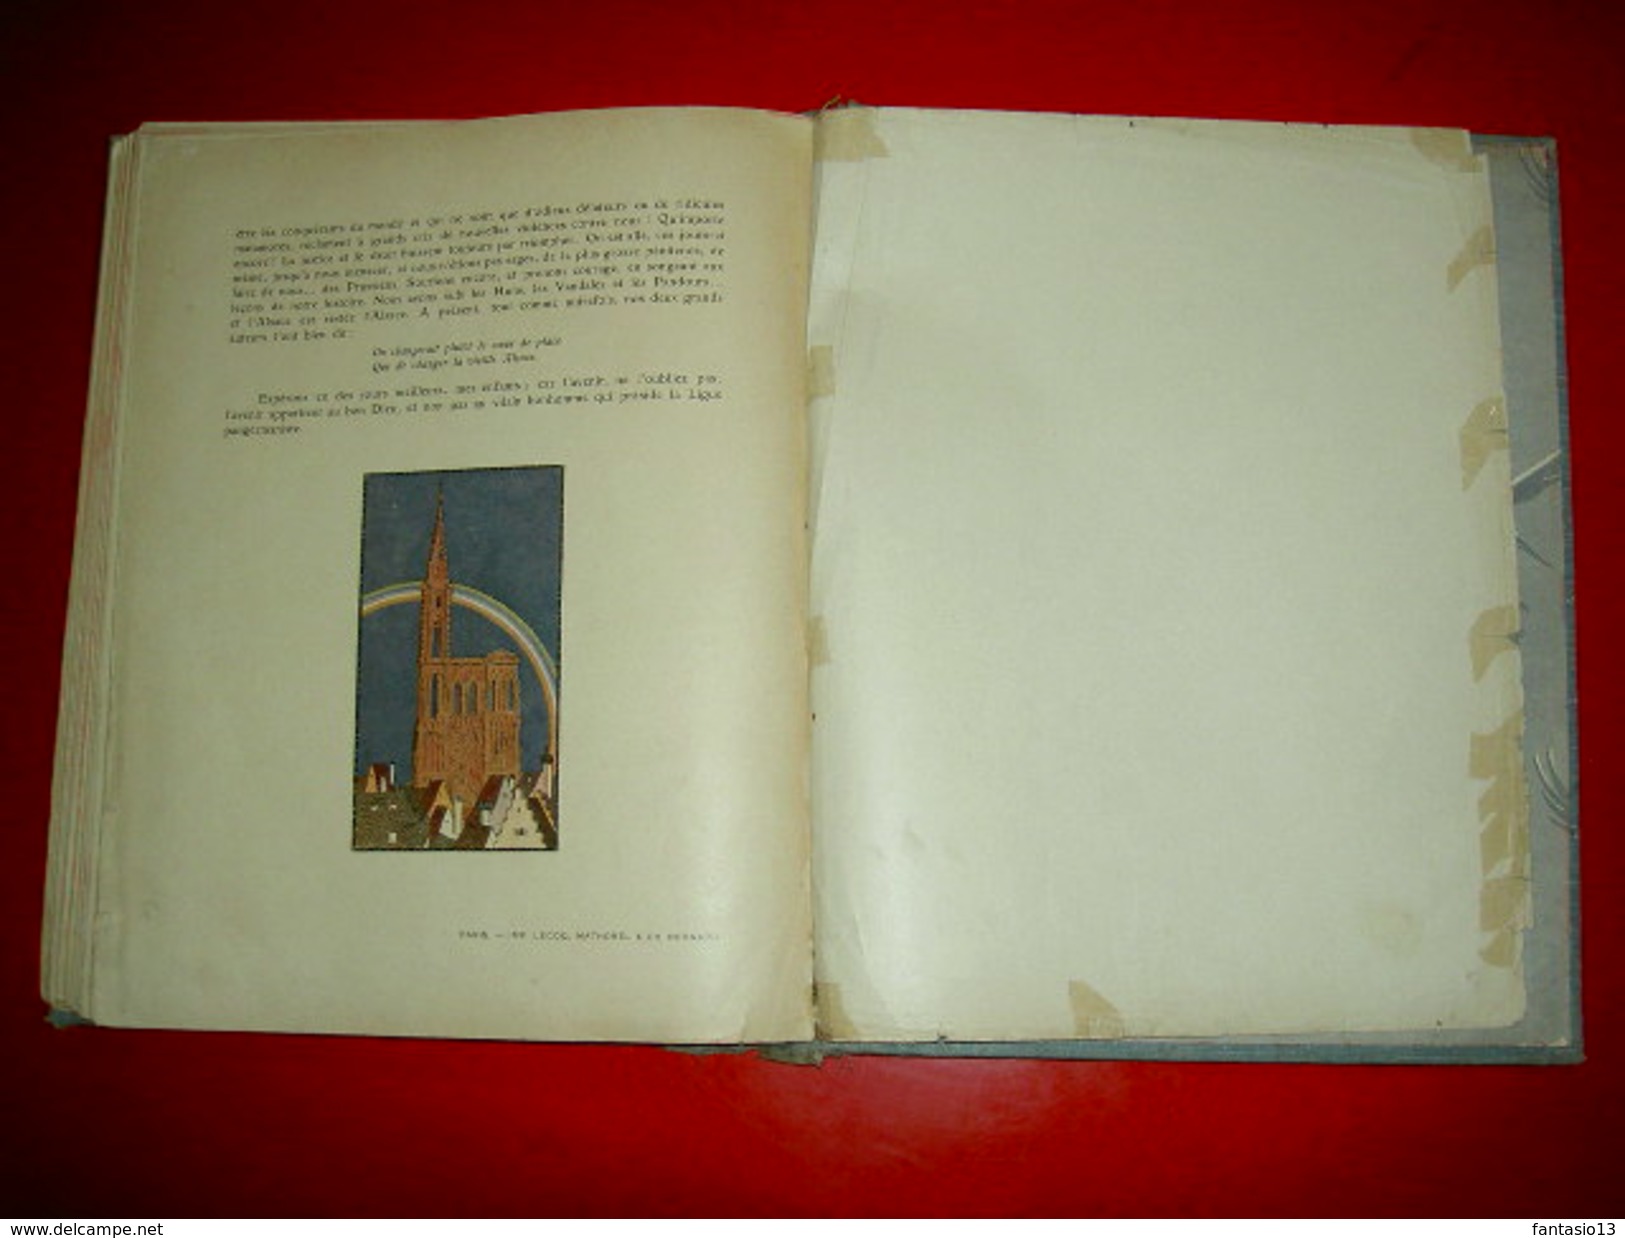 L' Histoire d' Alsace racontée aux petits enfants  par l' Oncle Hansi .Illustré par Hansi et Huen  1912 Ed. Floury